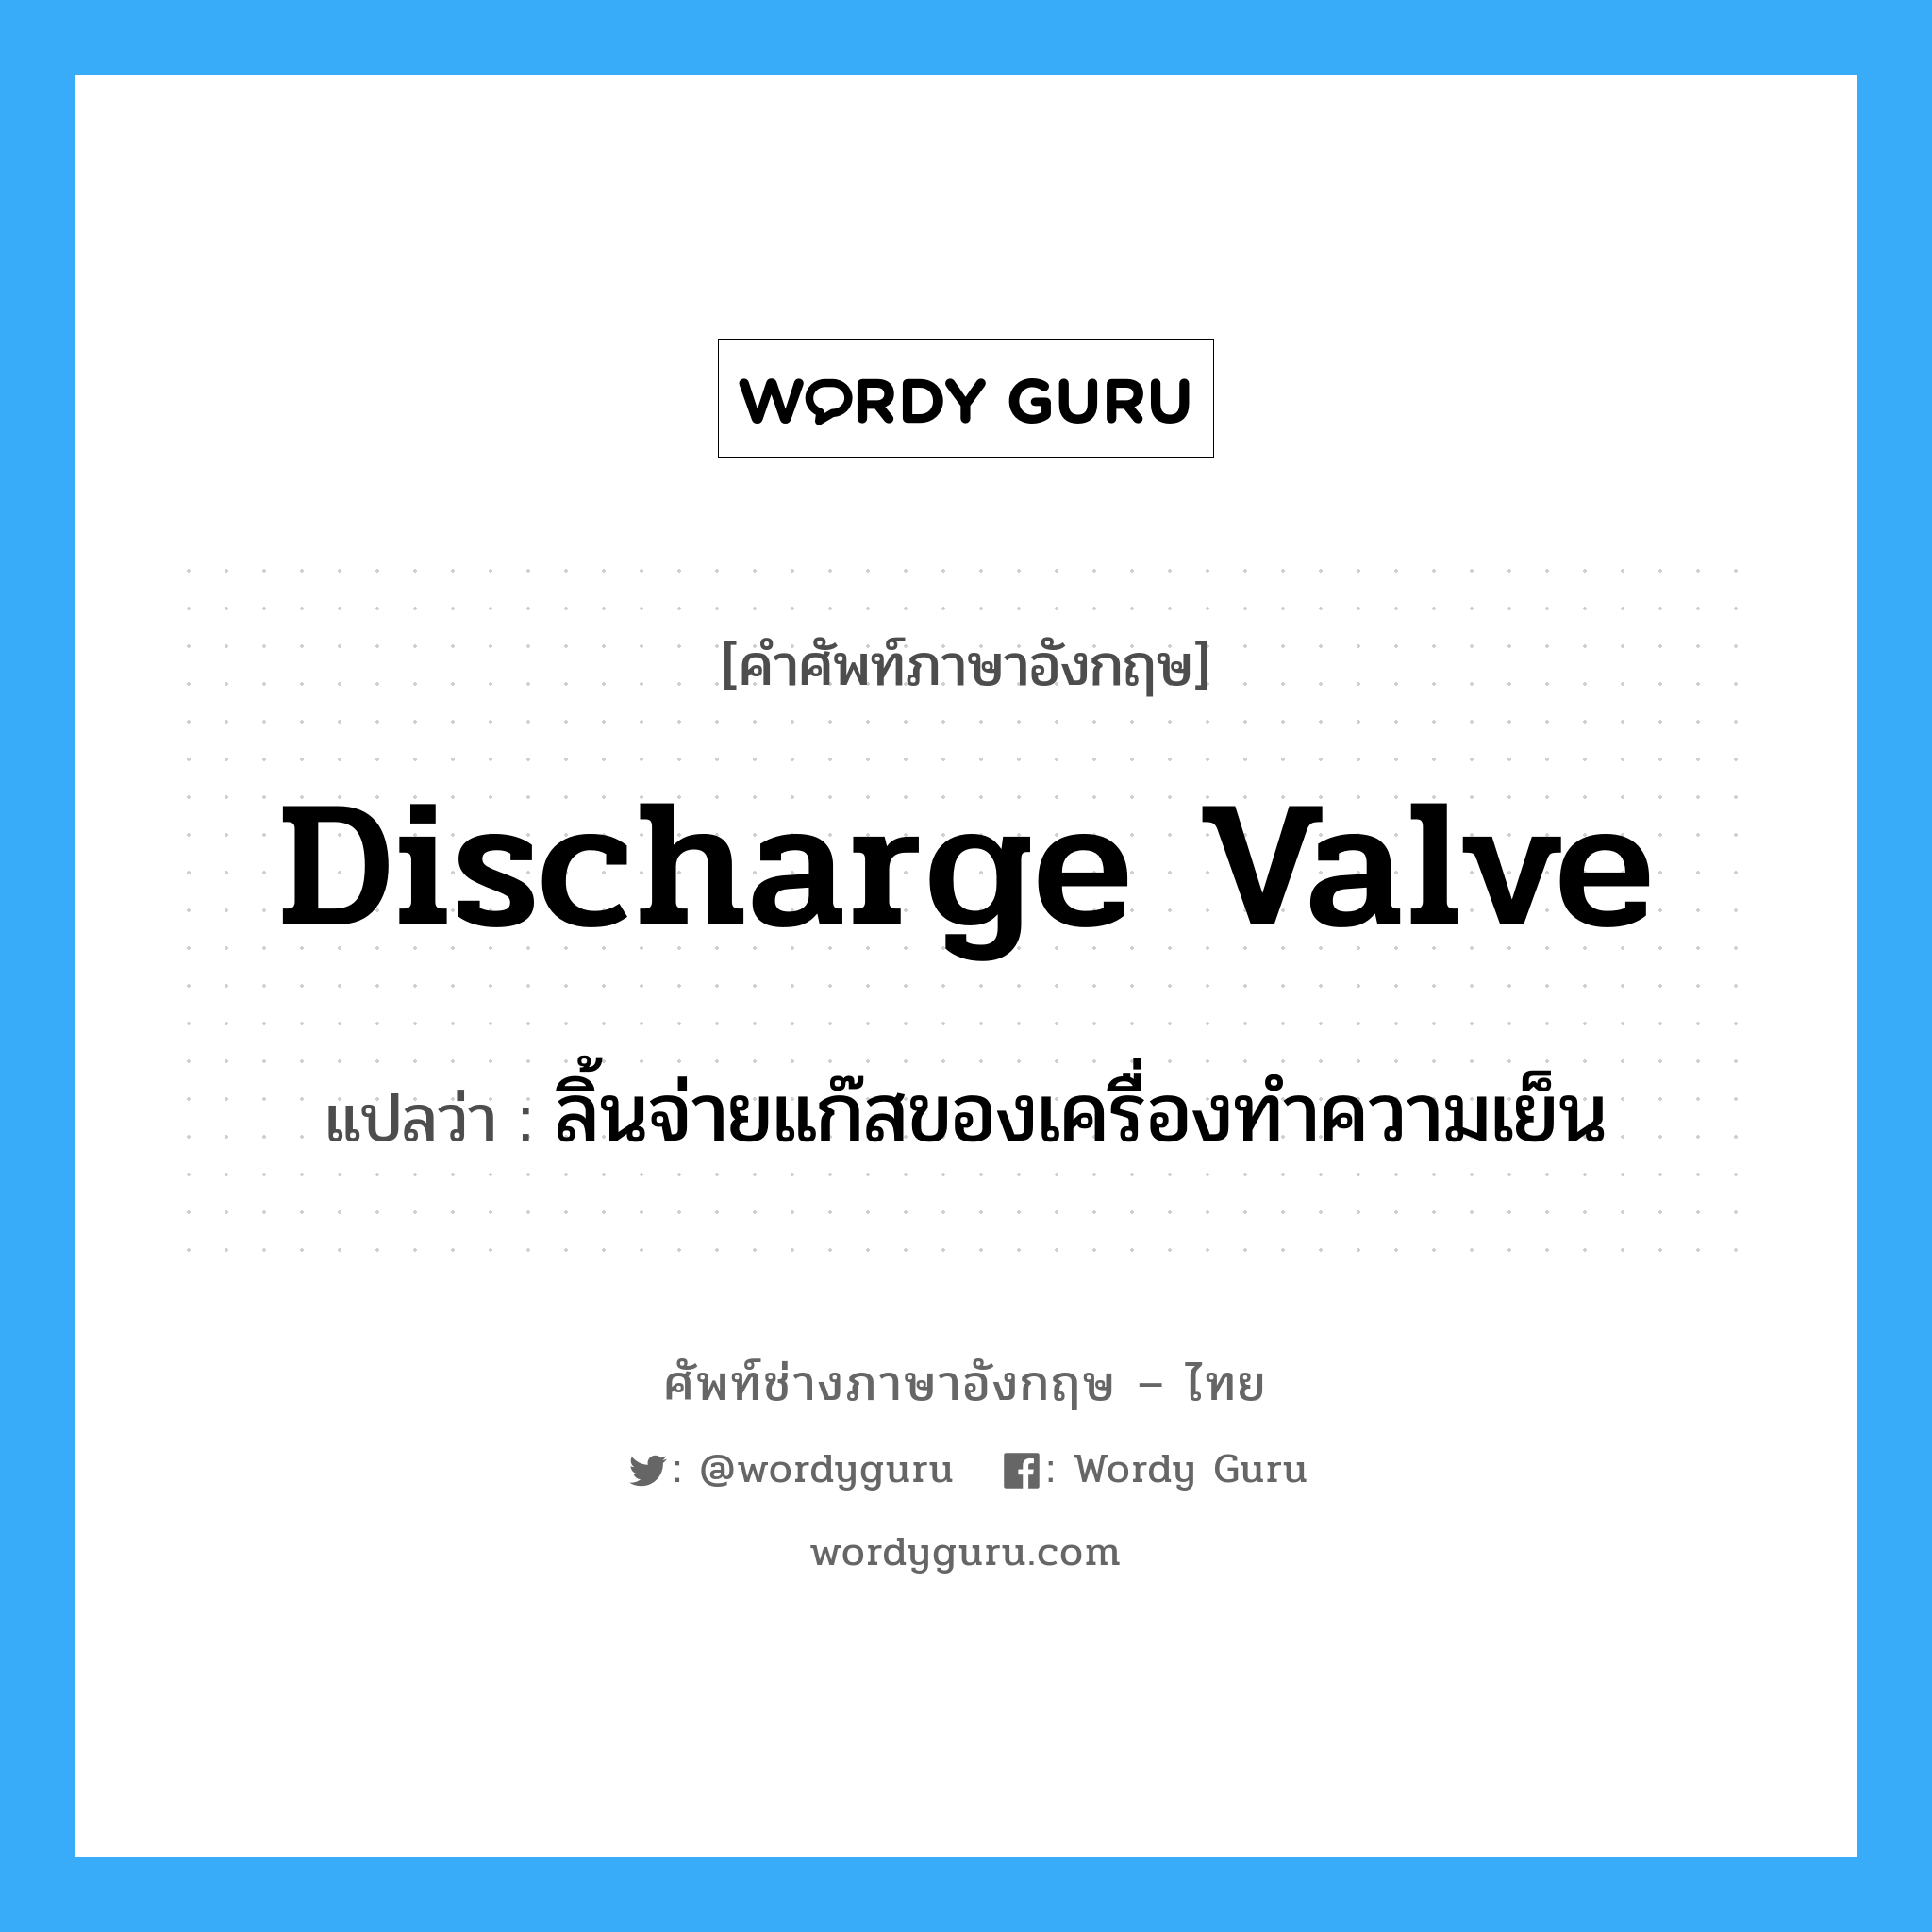 discharge valve แปลว่า?, คำศัพท์ช่างภาษาอังกฤษ - ไทย discharge valve คำศัพท์ภาษาอังกฤษ discharge valve แปลว่า ลิ้นจ่ายแก๊สของเครื่องทำความเย็น